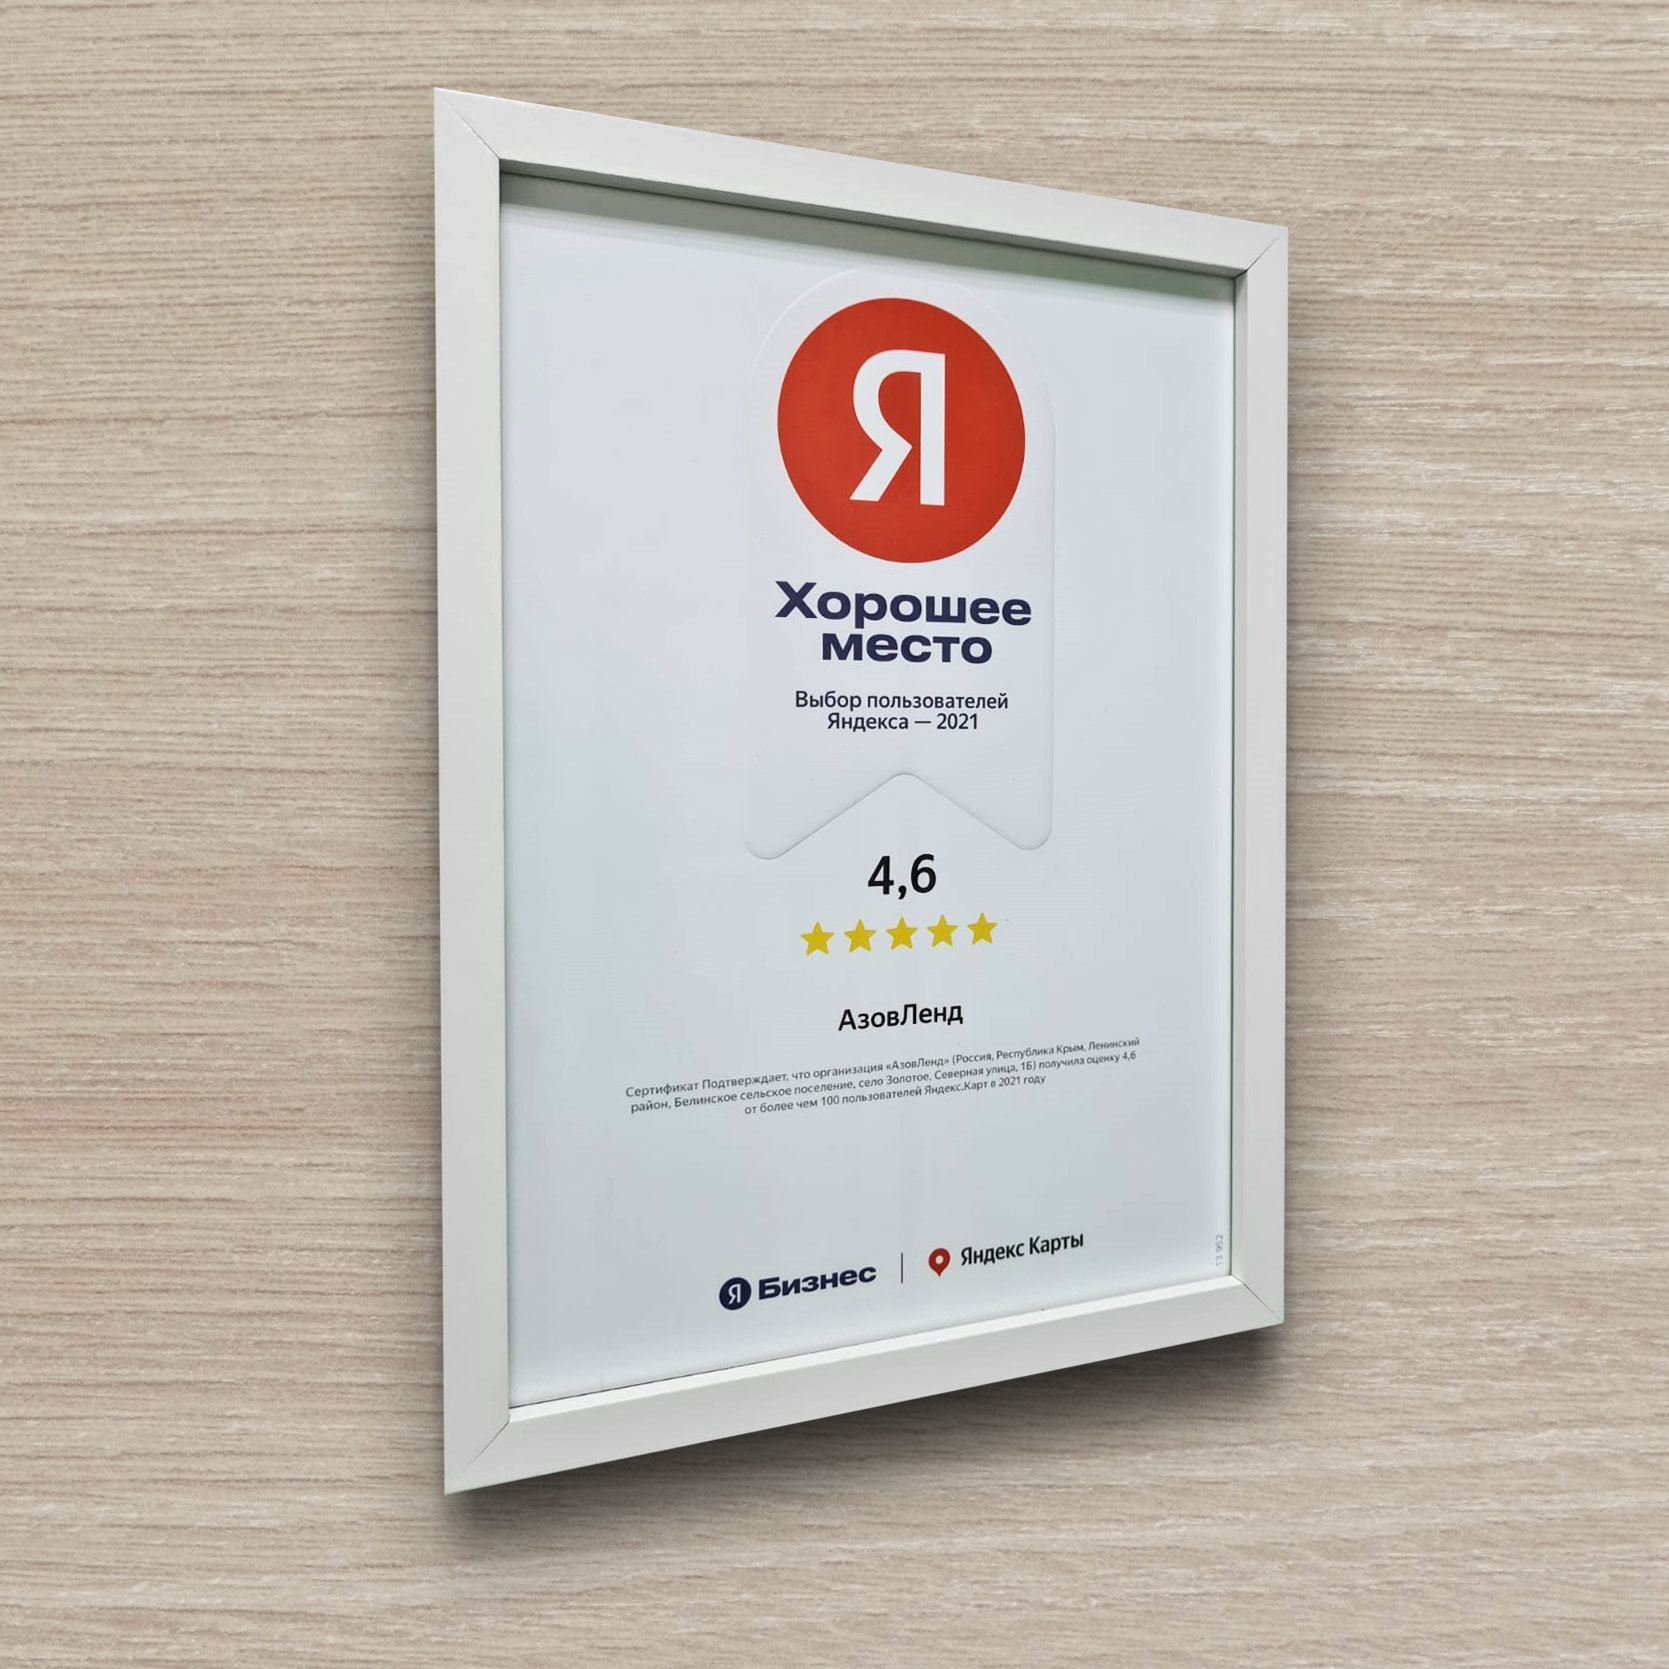 Семейный отель «АзовЛенд» – выбор пользователей «Яндекса» в 2021 году